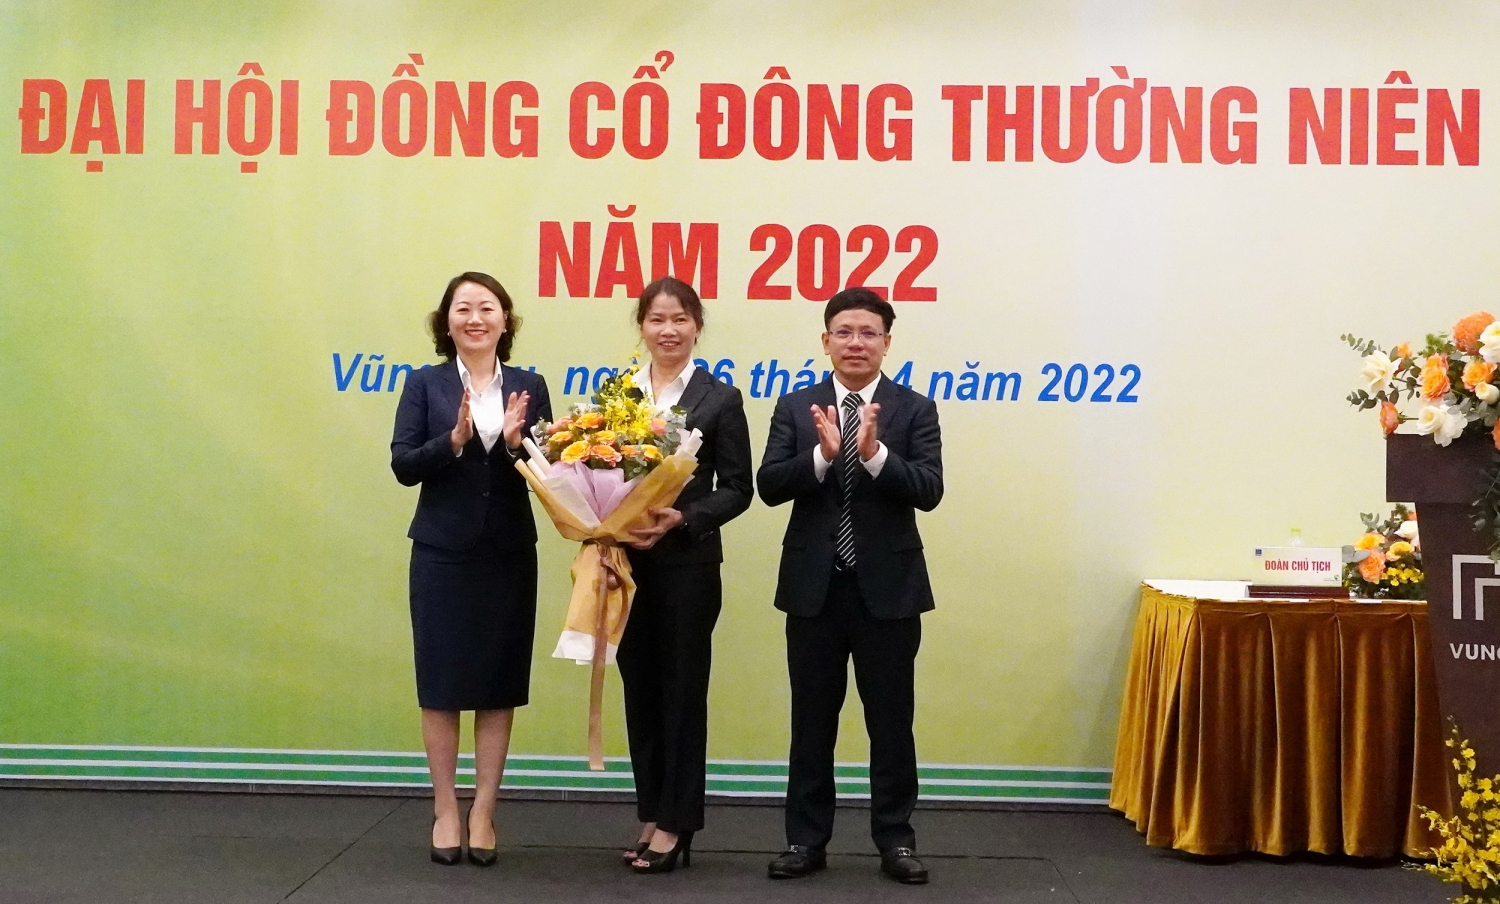 Tri ân sự đóng góp của nguyên thành viên Ban Kiểm soát Công ty - bà Phan Thị Kim Thoa